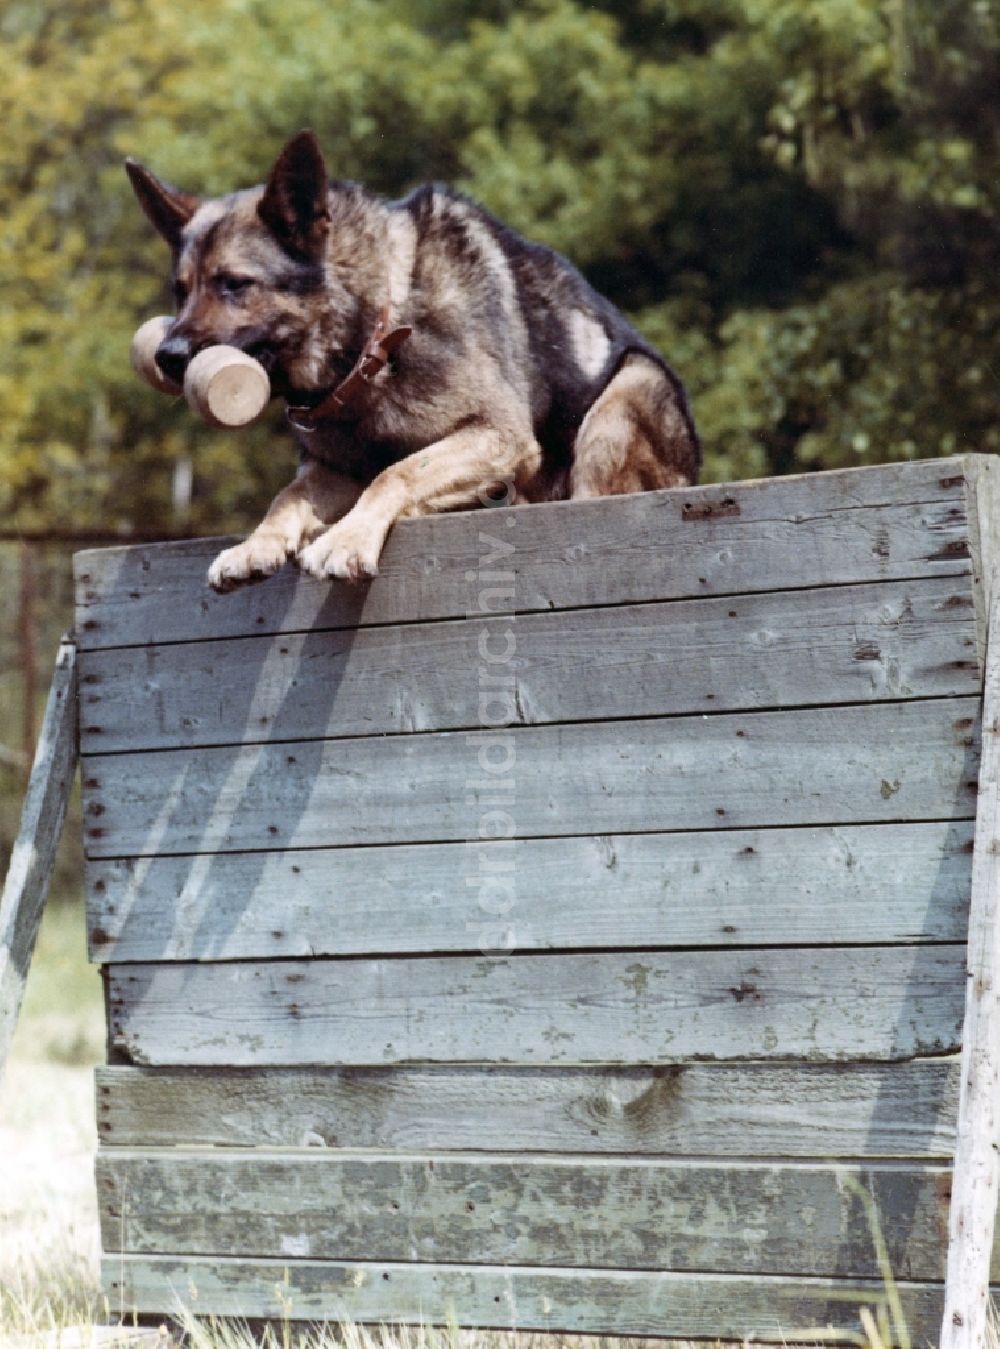 DDR-Bildarchiv: Abbenrode - Wachhundeausbildung durch Soldaten der Grenztruppen der DDR